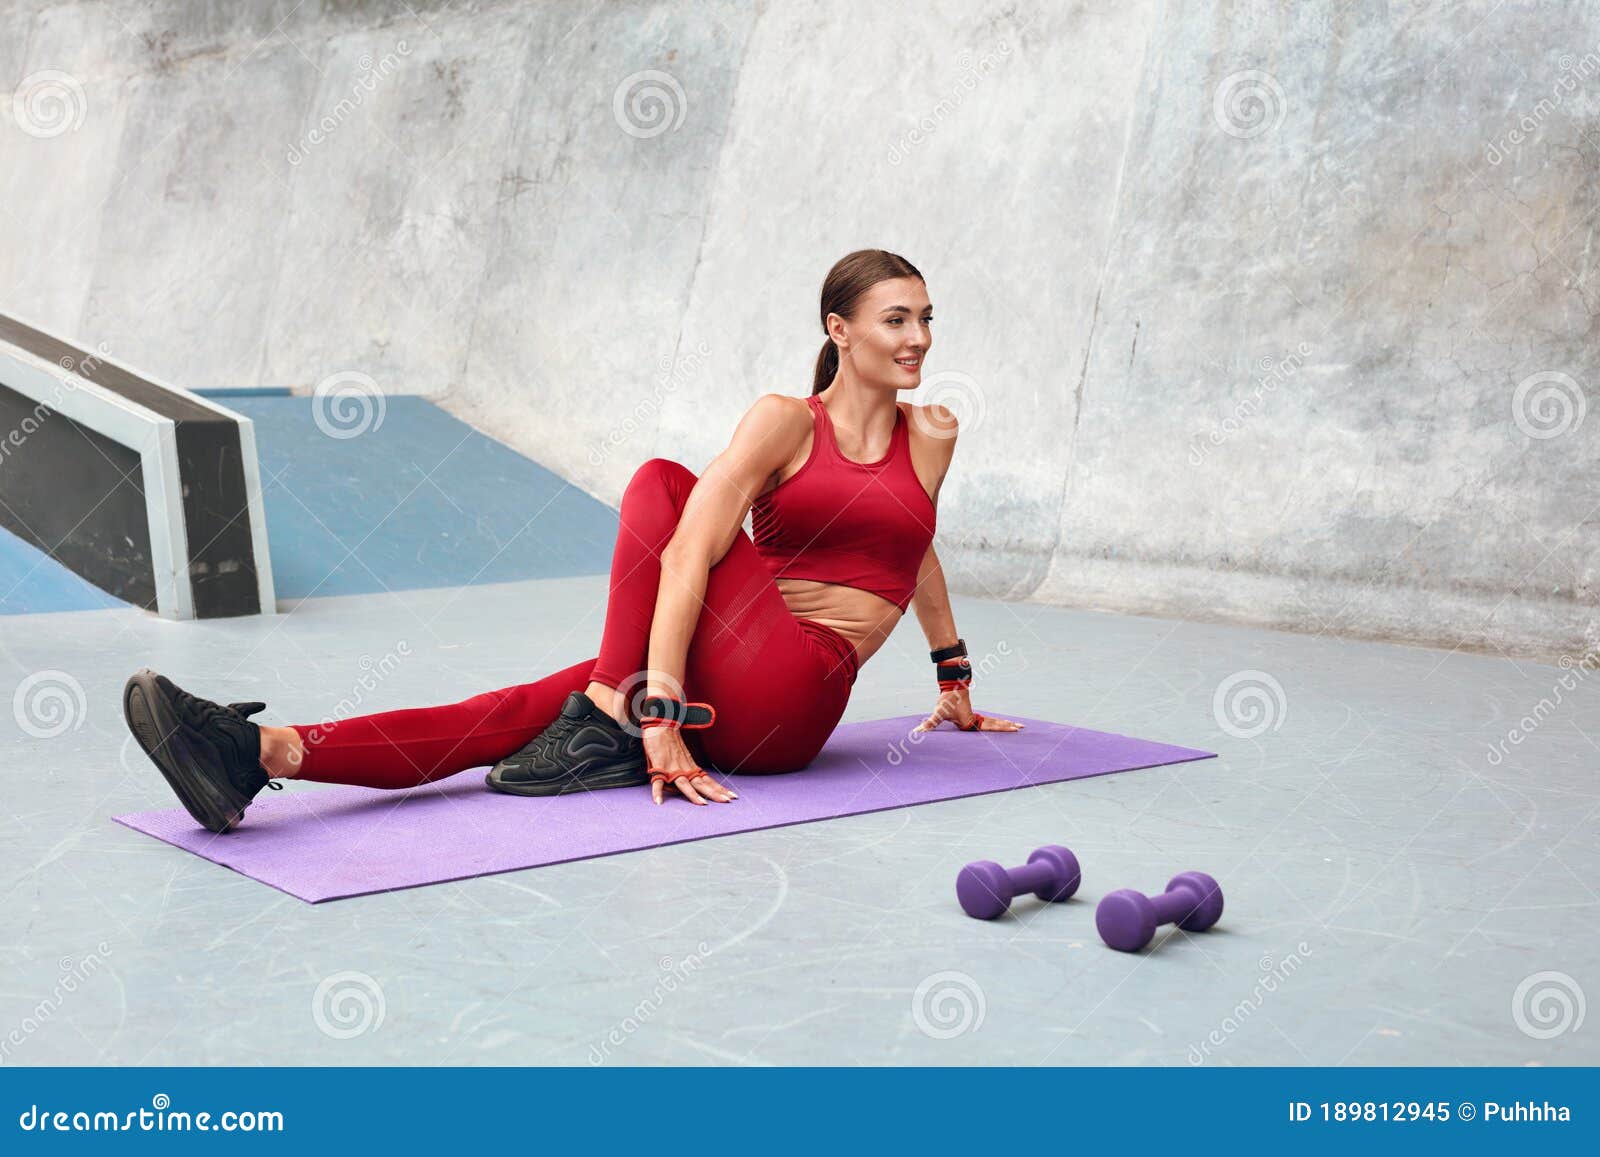 Deporte. Mujer Estirando Sobre Alfombra De Yoga Antes De Hacer Ejercicio.  Gimnasia Femenina Con Fuerte Cuerpo Muscular En Ropa Dep Imagen de archivo  - Imagen de afuera, lifestyle: 189812945